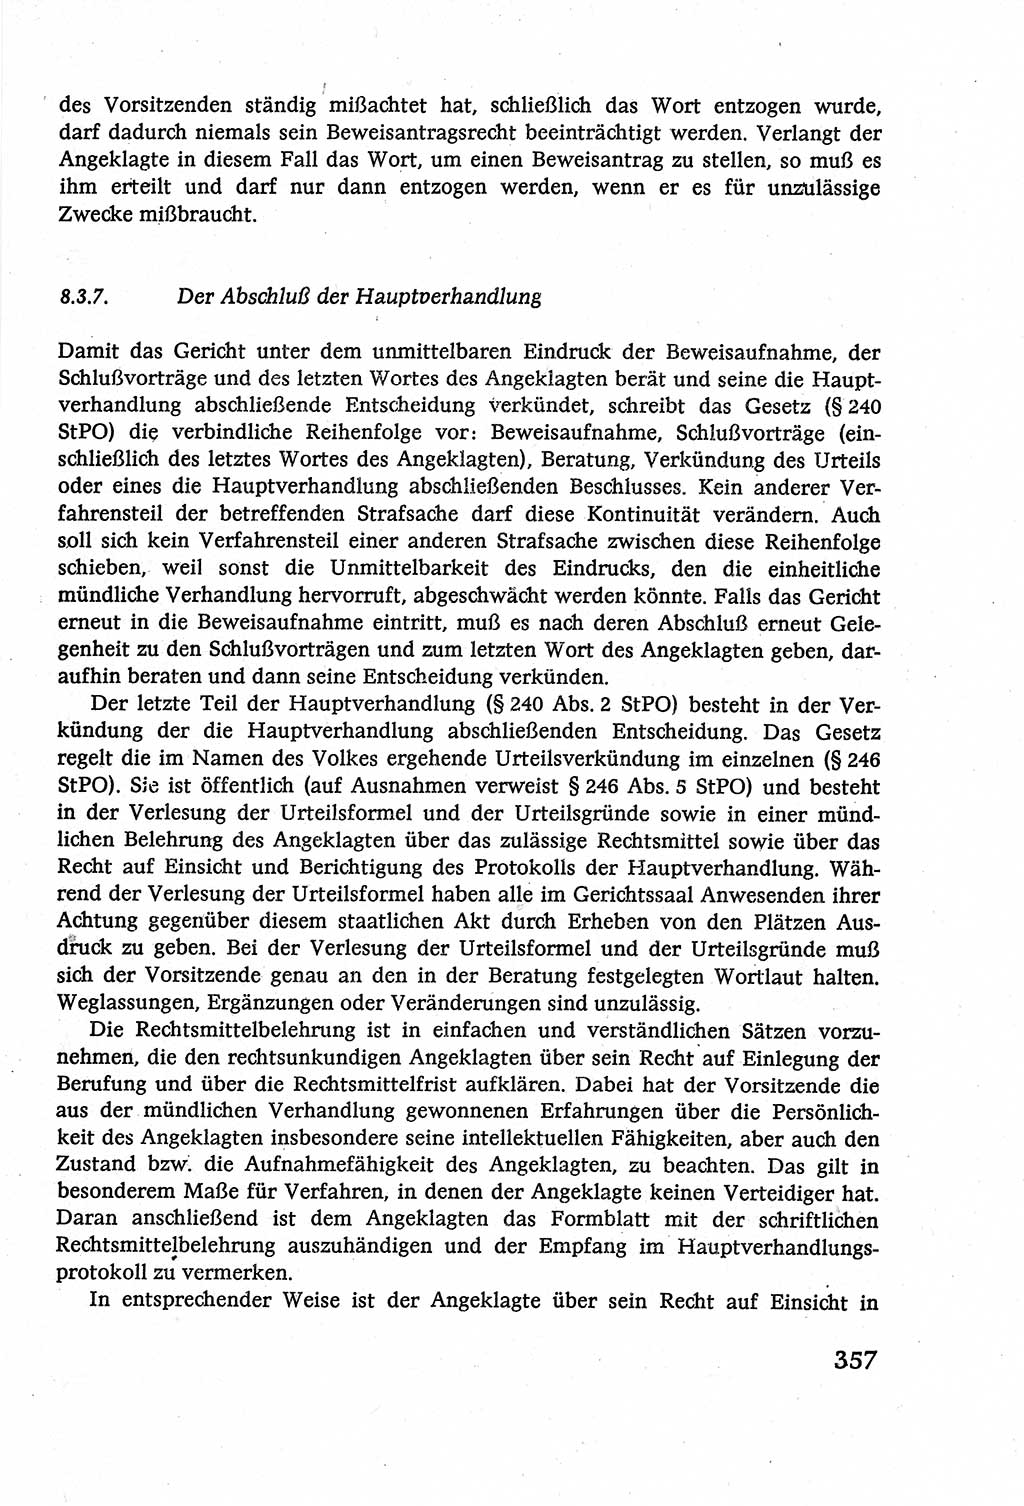 Strafverfahrensrecht [Deutsche Demokratische Republik (DDR)], Lehrbuch 1977, Seite 357 (Strafverf.-R. DDR Lb. 1977, S. 357)